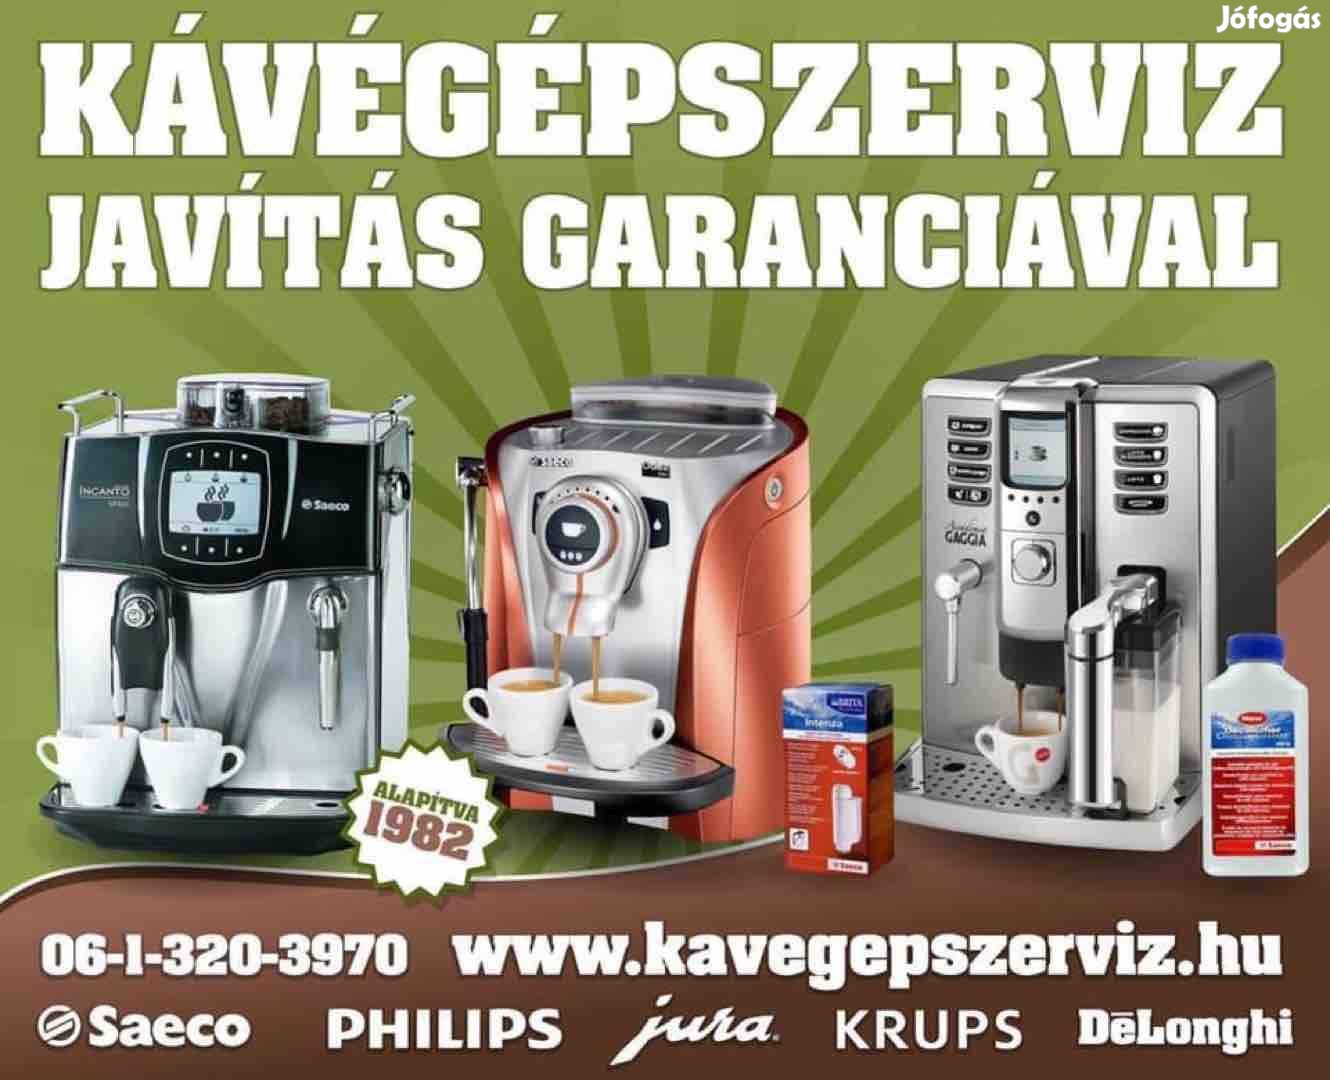 Saeco,Philips, Delonghi, Krups kávégép-szerviz garanciával!